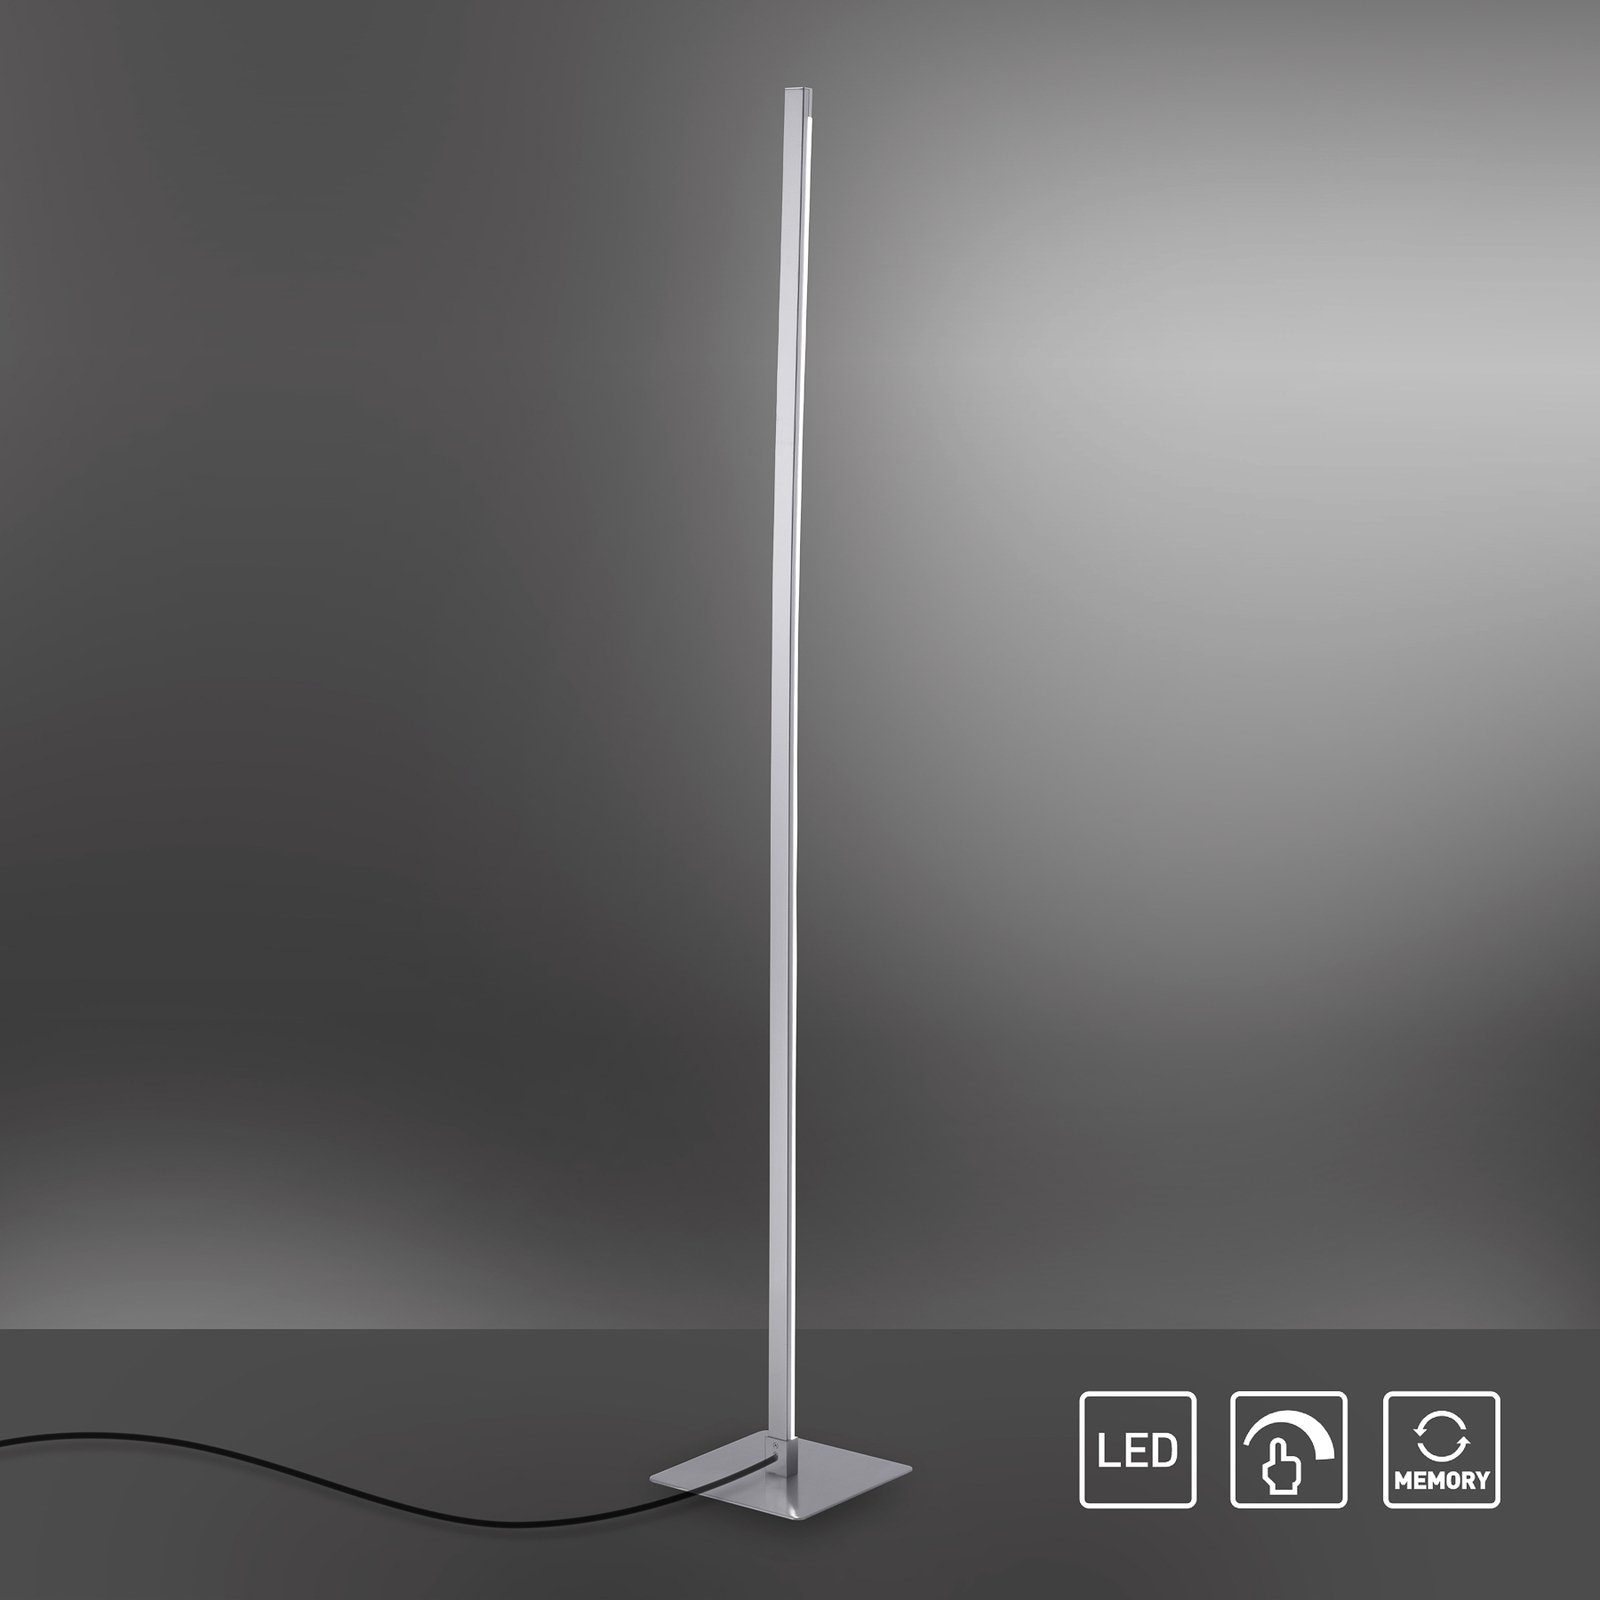 LED stojací lampa Bella, rovná, čtvercová základna, ocel